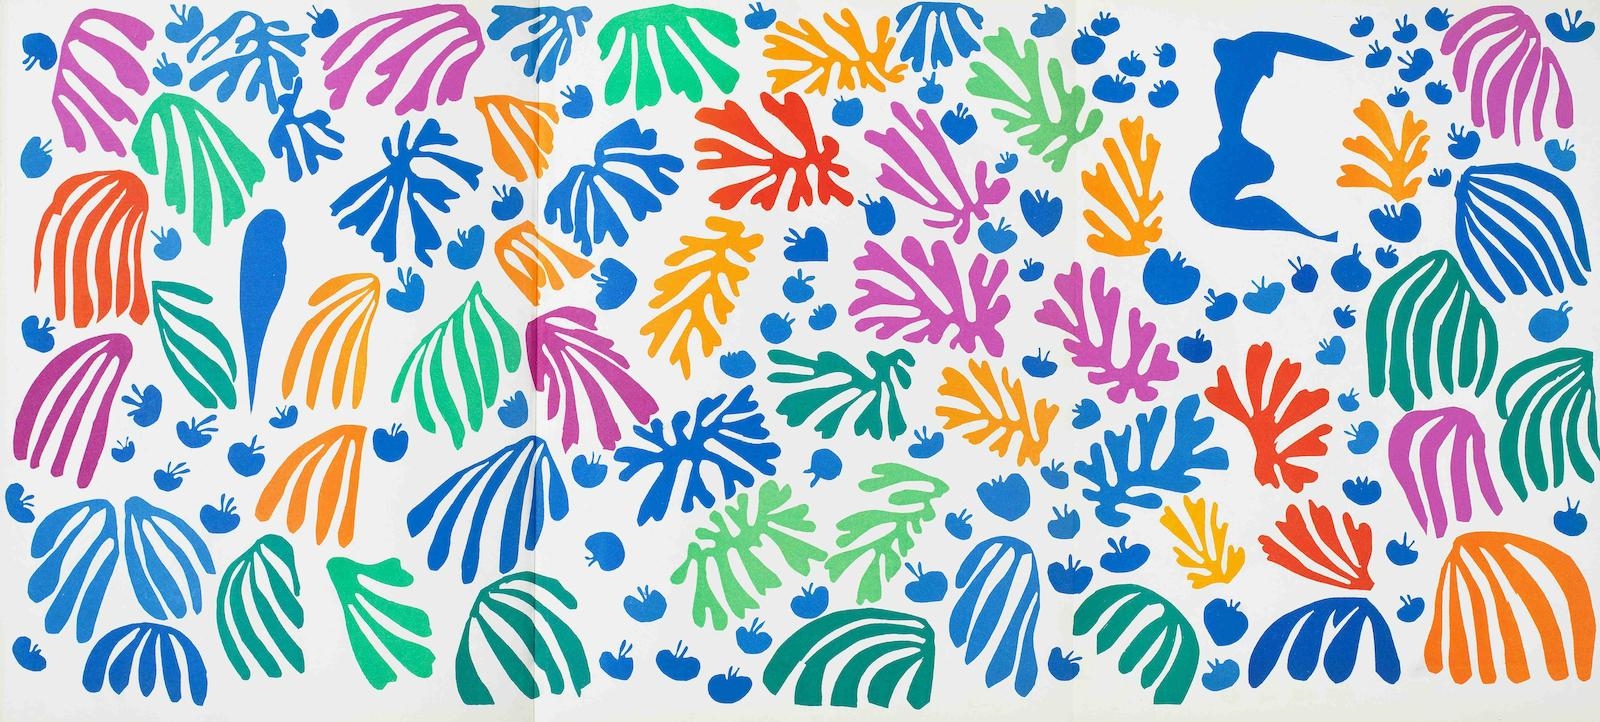 40 Works: Verve, Volume IX, No. 35 & 36 by Henri Matisse, 1958